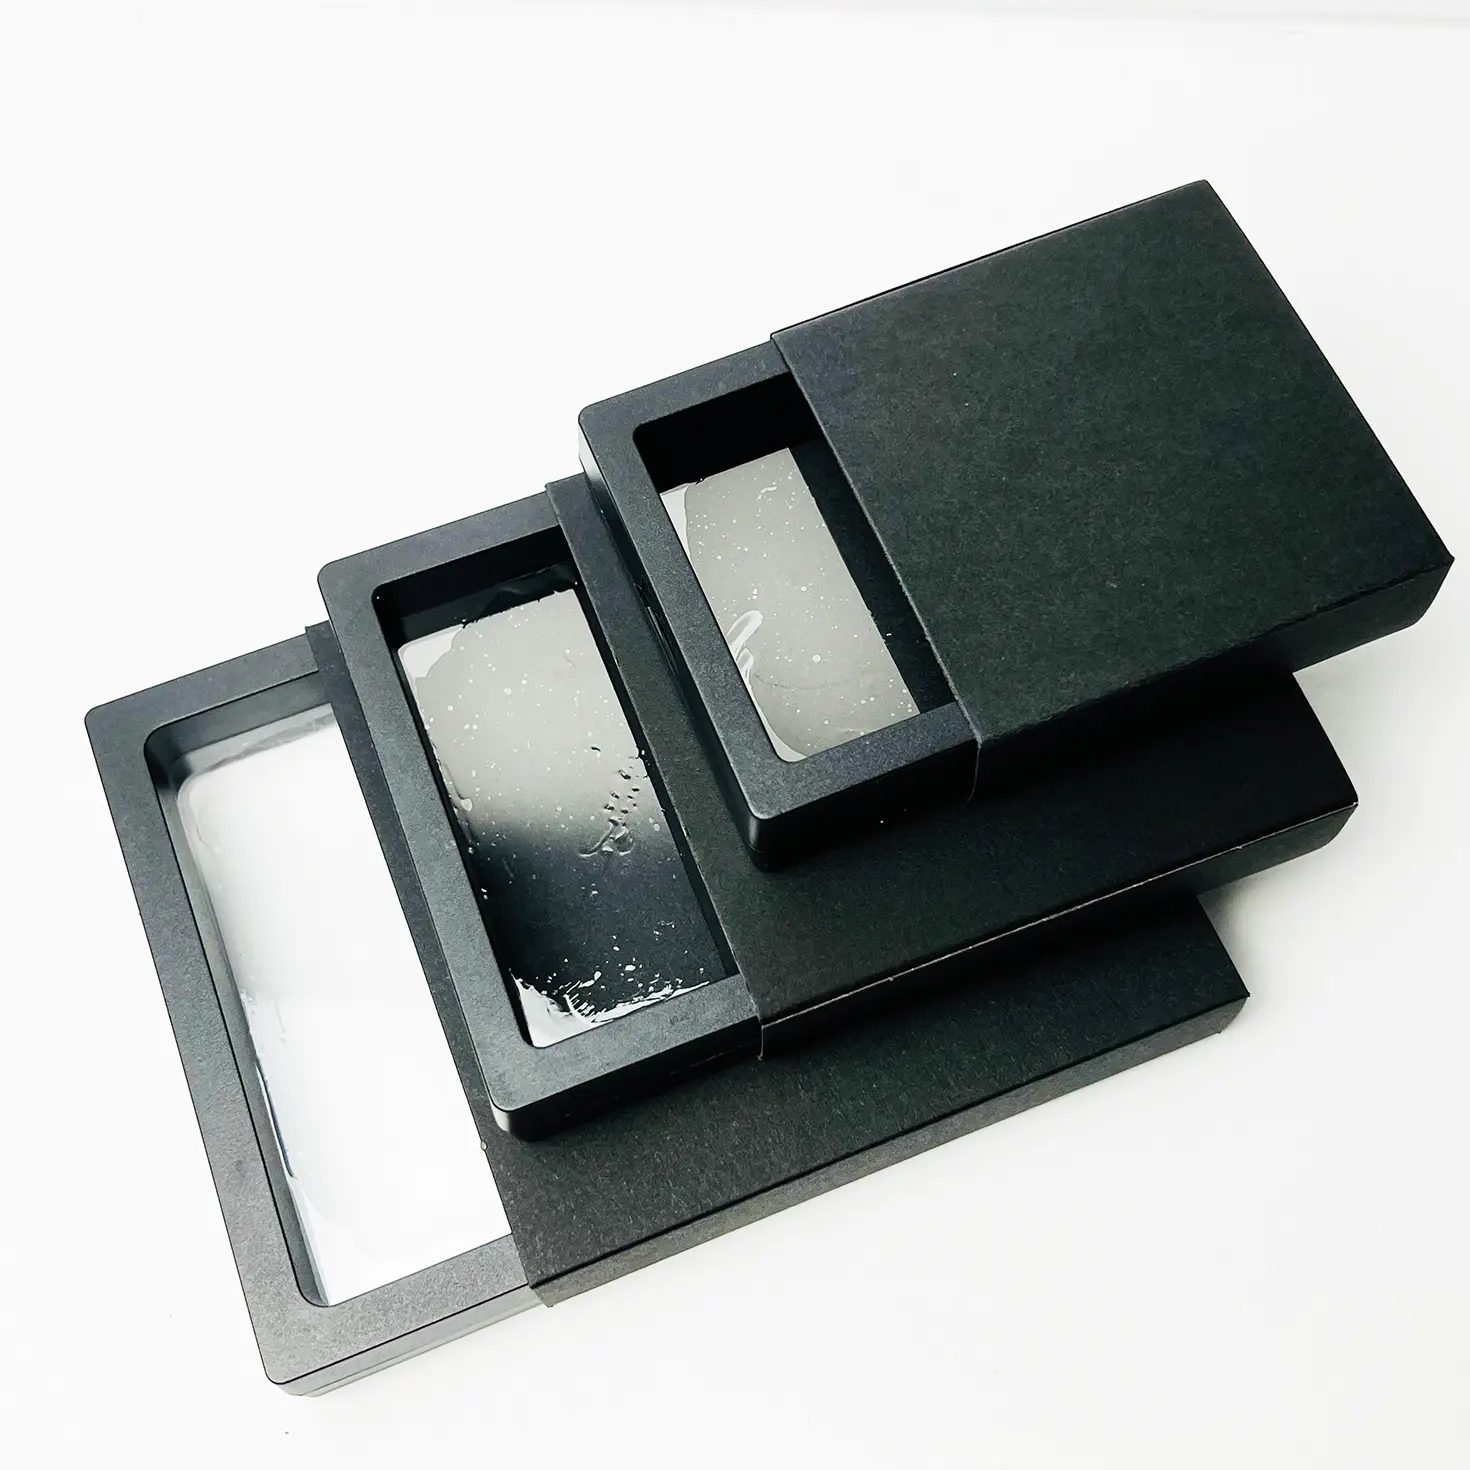 Challenge Coin Display rack Frame 3d Floating Display Case Stand Holder, medaglione medaglia campione moneta militare scatola trasparente